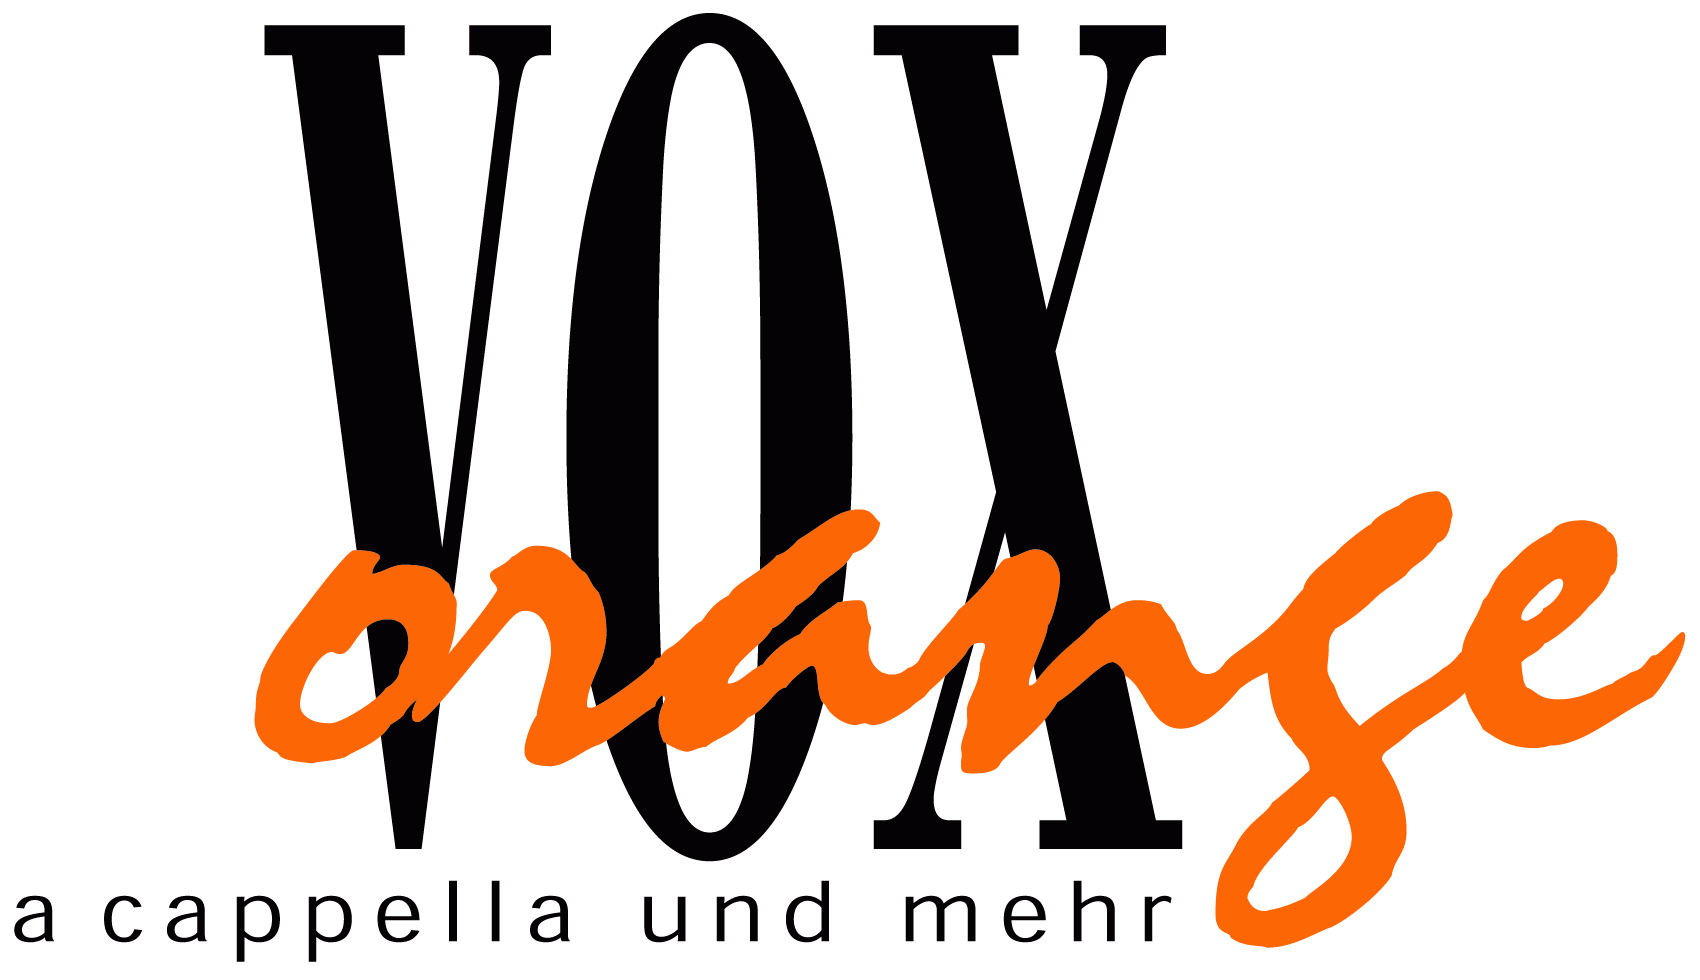 (c) Voxorange.com